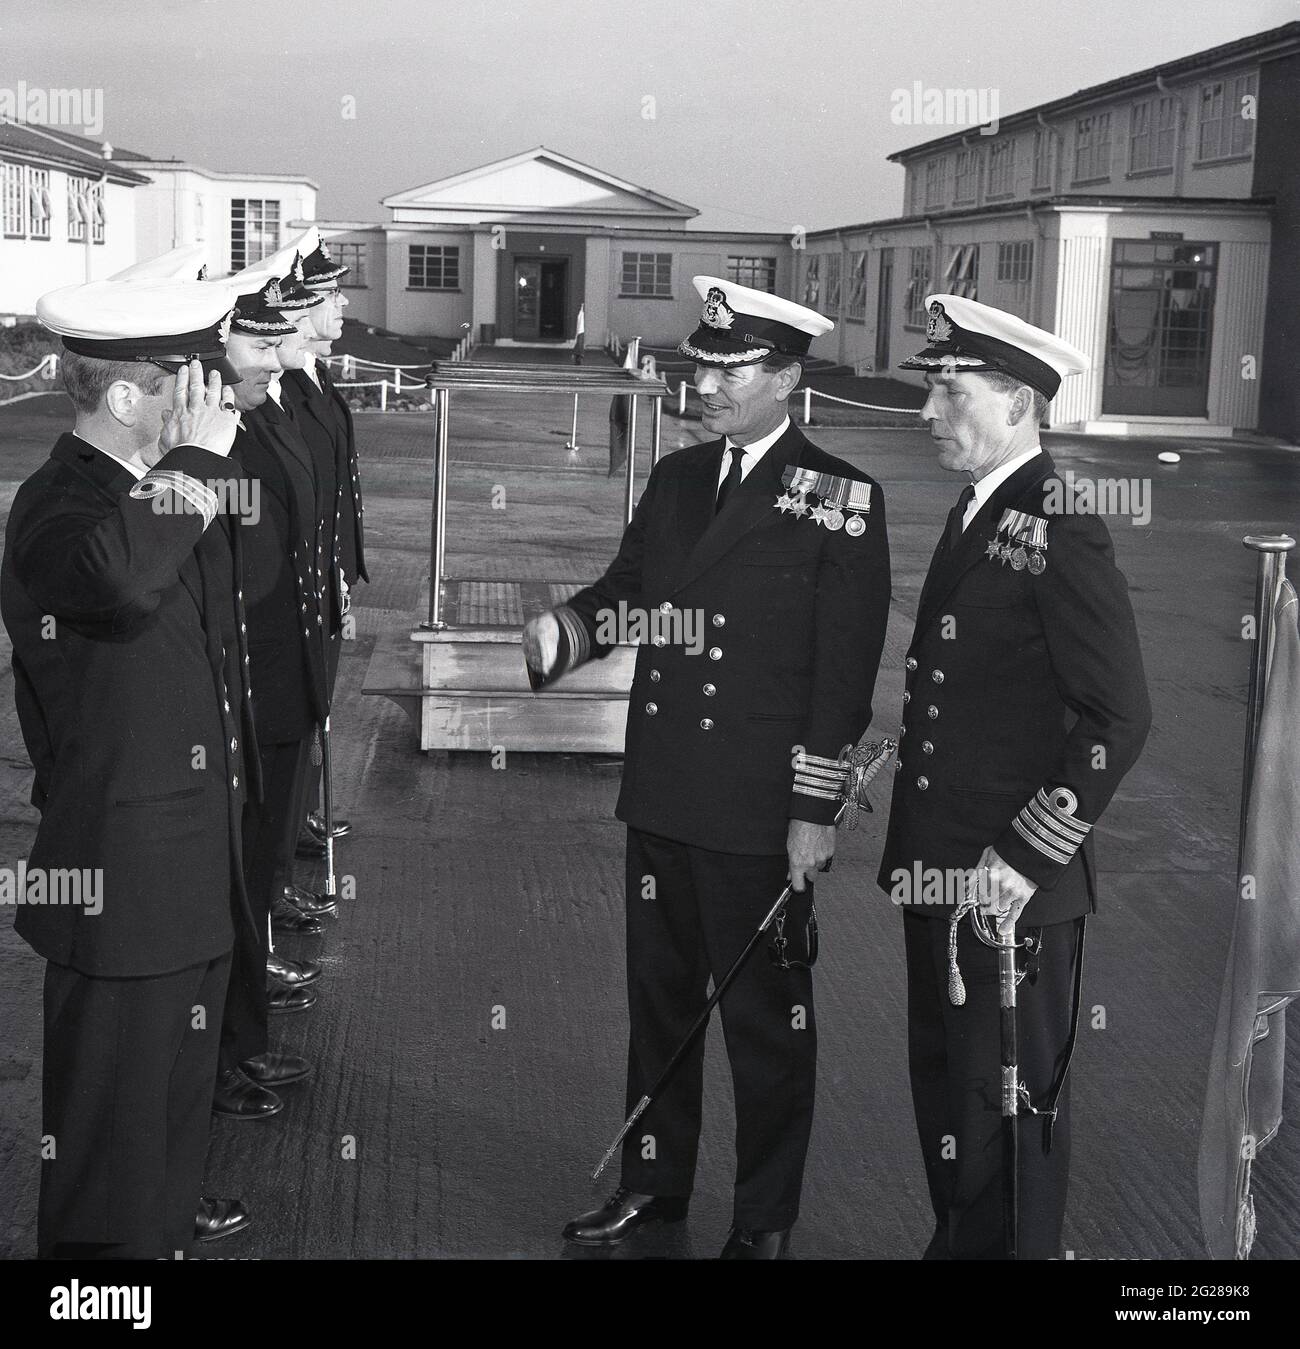 1960er Jahre, historisch, außerhalb der HMS Caledonia, in einer BefehlsüberÜbergabe, zwei Royal Naval Captains, einer, der einer Reihe von niederrangigen Offizieren, Fife, Schottland, vorgestellt wurde. Captain (Capt) ist ein hochrangiger Offizier der Royal Navy, über einem Commander und unter Commodore und hat einen NATO-Ranking-Code von OF-5. Der Rang entspricht einem Oberst der britischen Armee und der Royal Marines sowie einem Gruppenkapitän der Royal Air Force. Die HMS Caledonia wurde 1937 eröffnet und war bis 1985 für die Ausbildung von Handwerkern verantwortlich, wobei viele Tausende von jungen Männern eine Ausbildung durchgemacht haben. Stockfoto